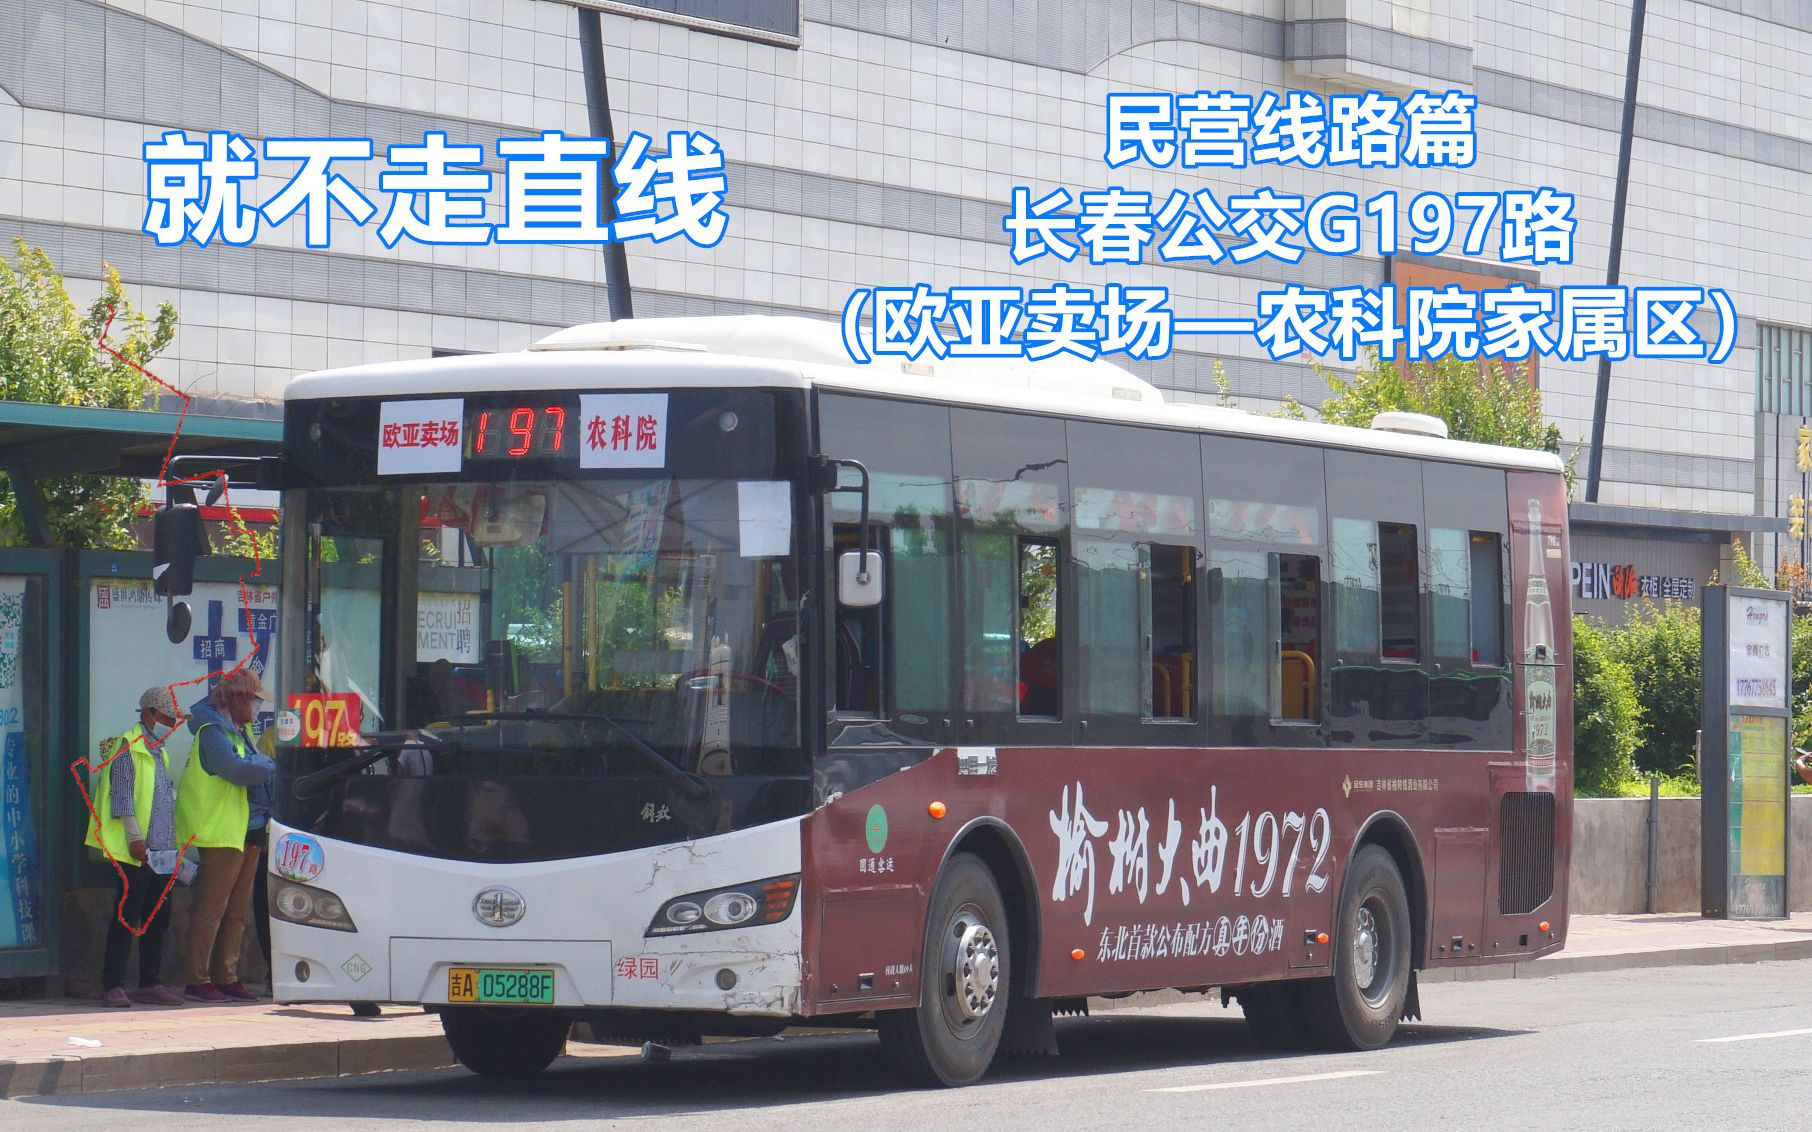 【就不走直线】—【民营线路篇】长春公交G197路（欧亚卖场——农科院家属区）第一视角POV